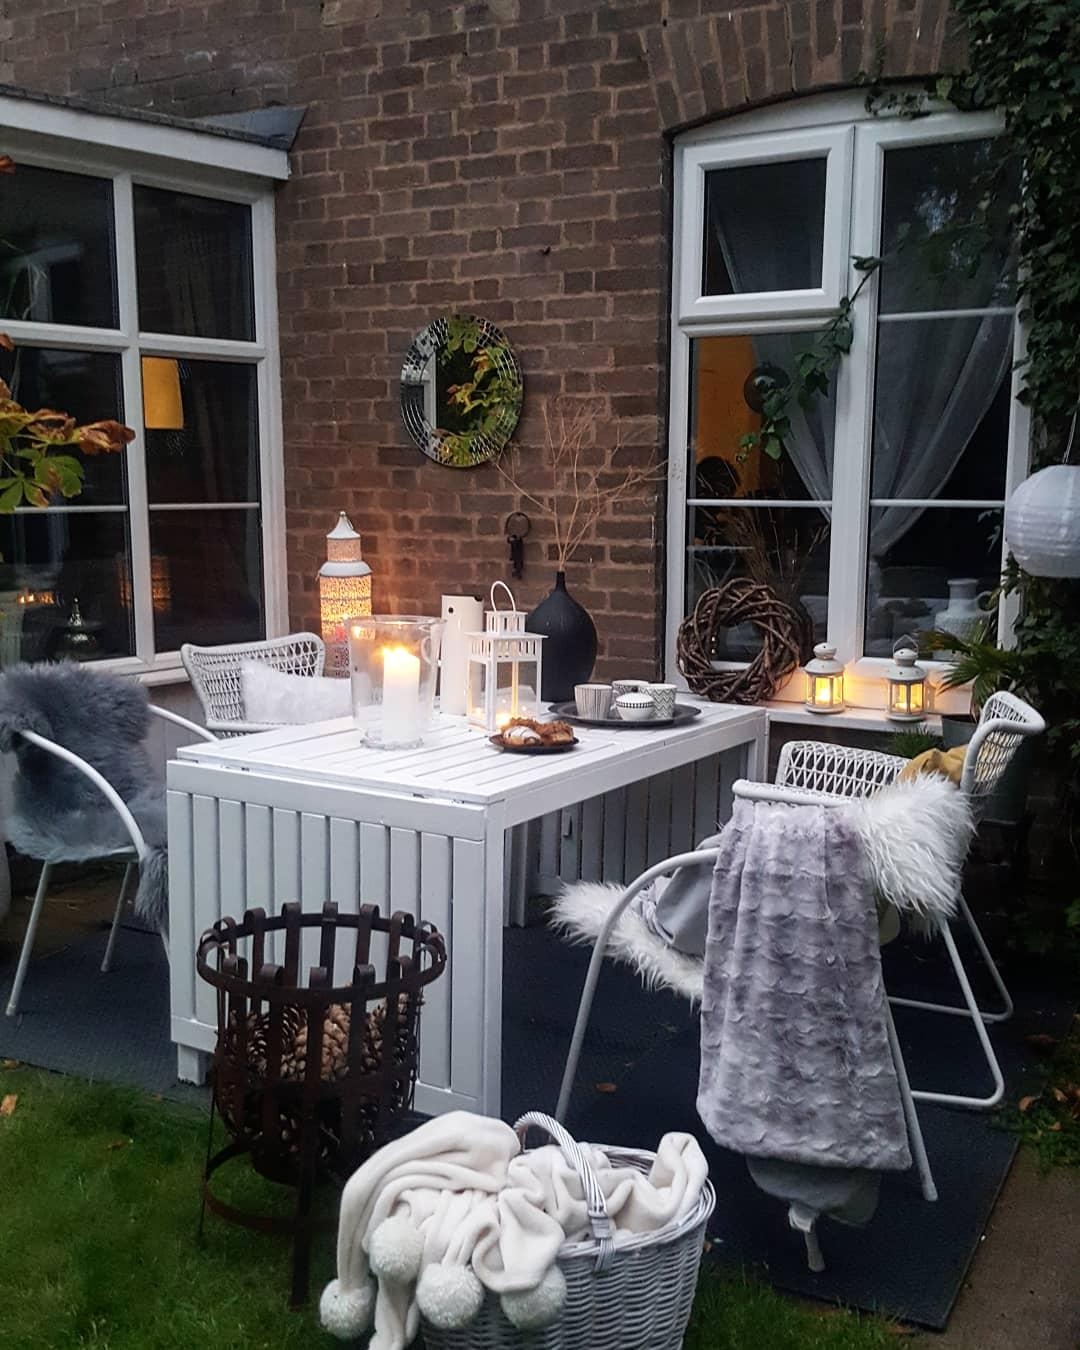 Letzte Abende im Garten in Nottingham.
#herbst #garten #england #deko